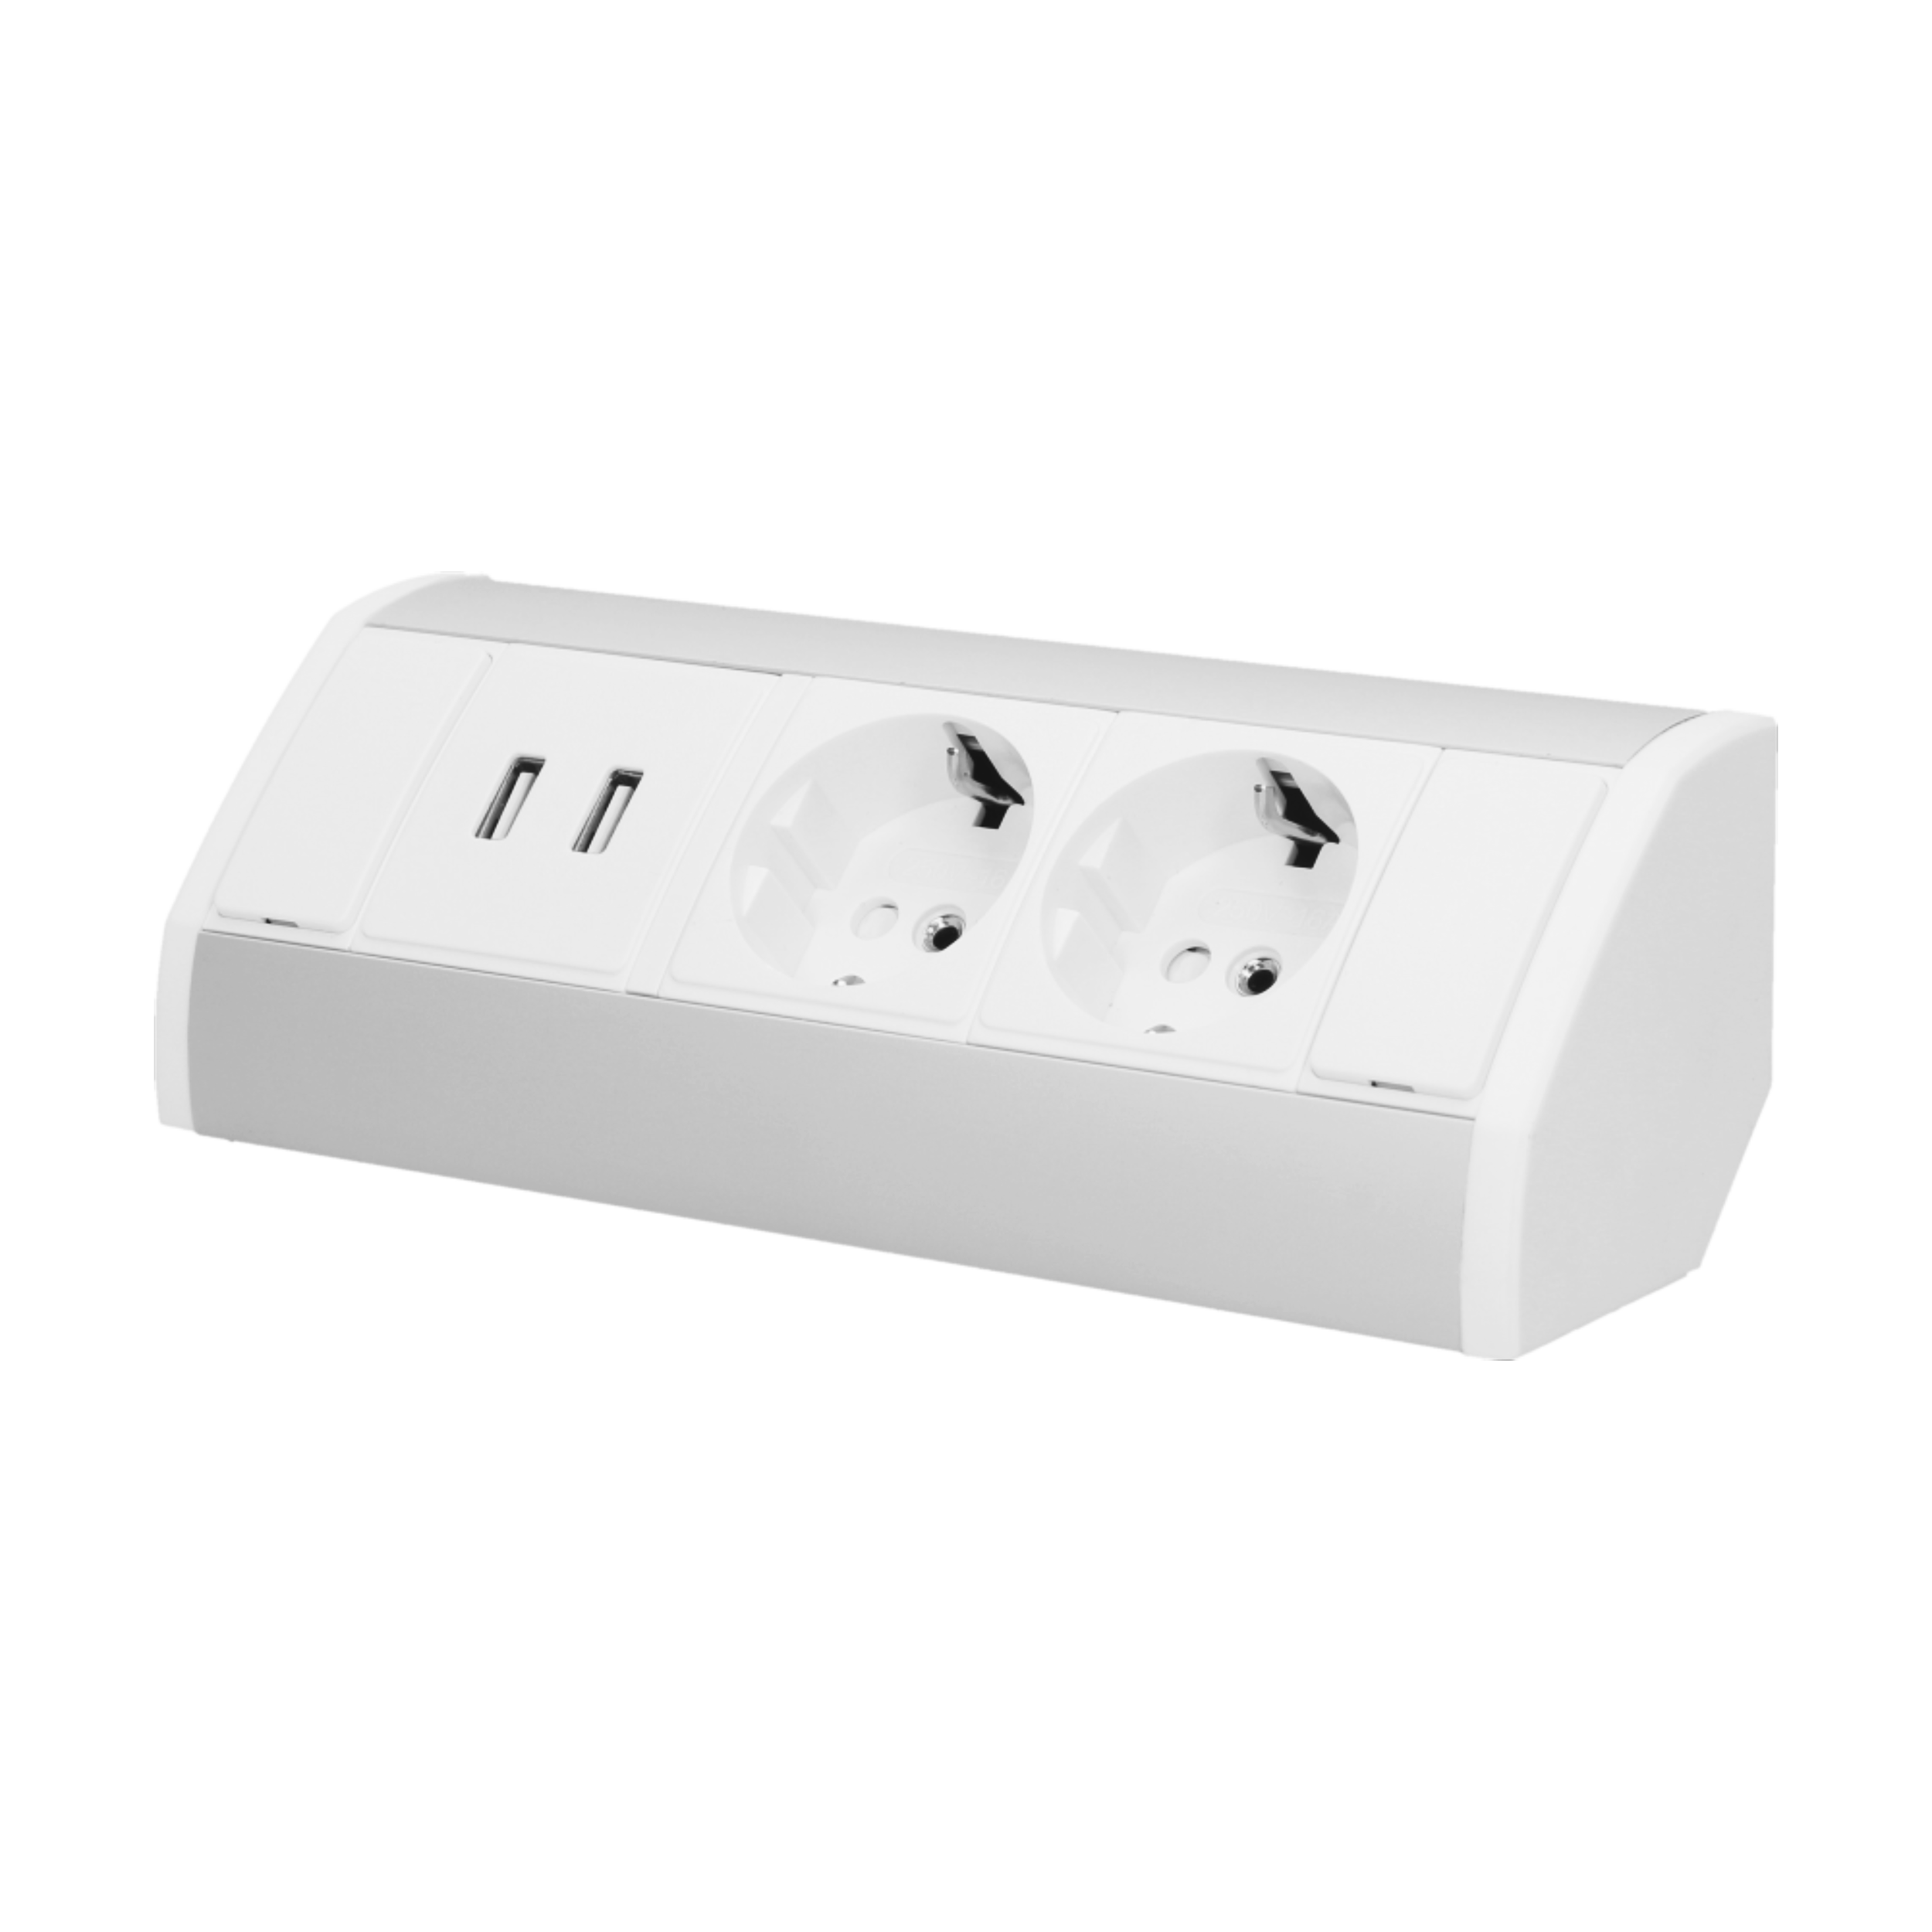 Möbelsteckdose mit Halterung, USB-Ladegerät, 2 Steckdosen 2P+Z (Schuko),  2xUSB (Typ A, 2,4A), Kabel 3x1,5mm2 - 1,4m, weiß - Elektrogeschäft Reeline